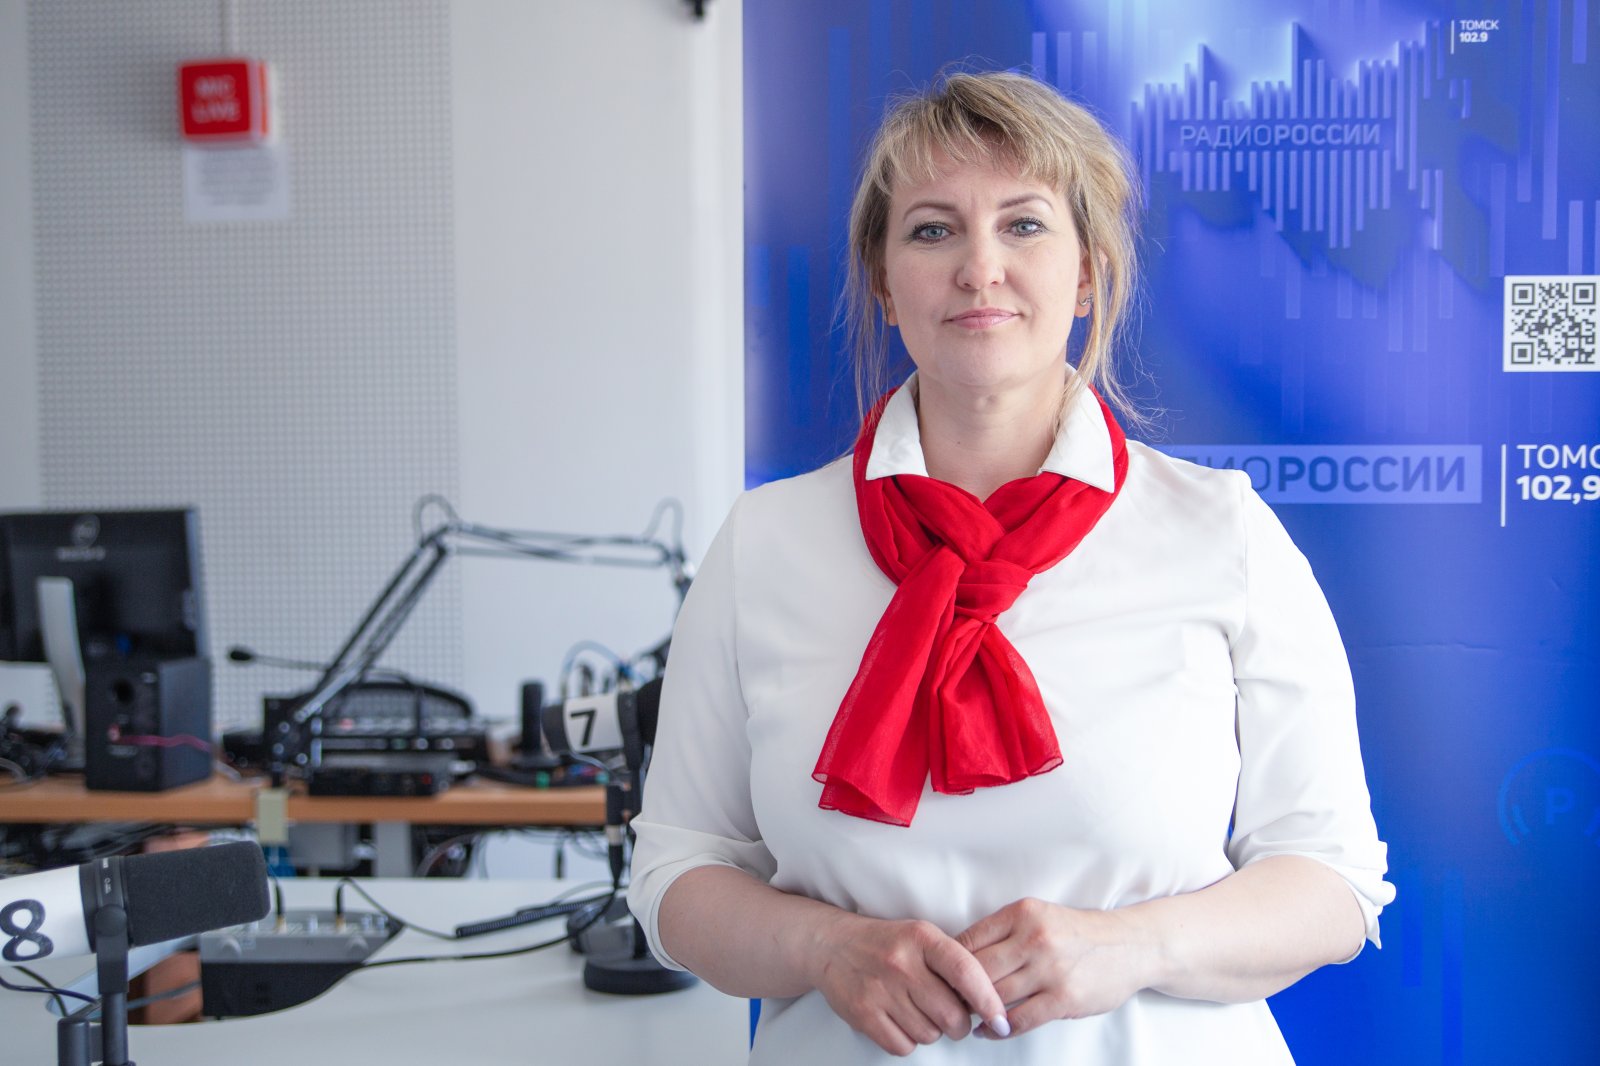 Наталия Корсакова, начальник службы радиовещания ГТРК "Томск"